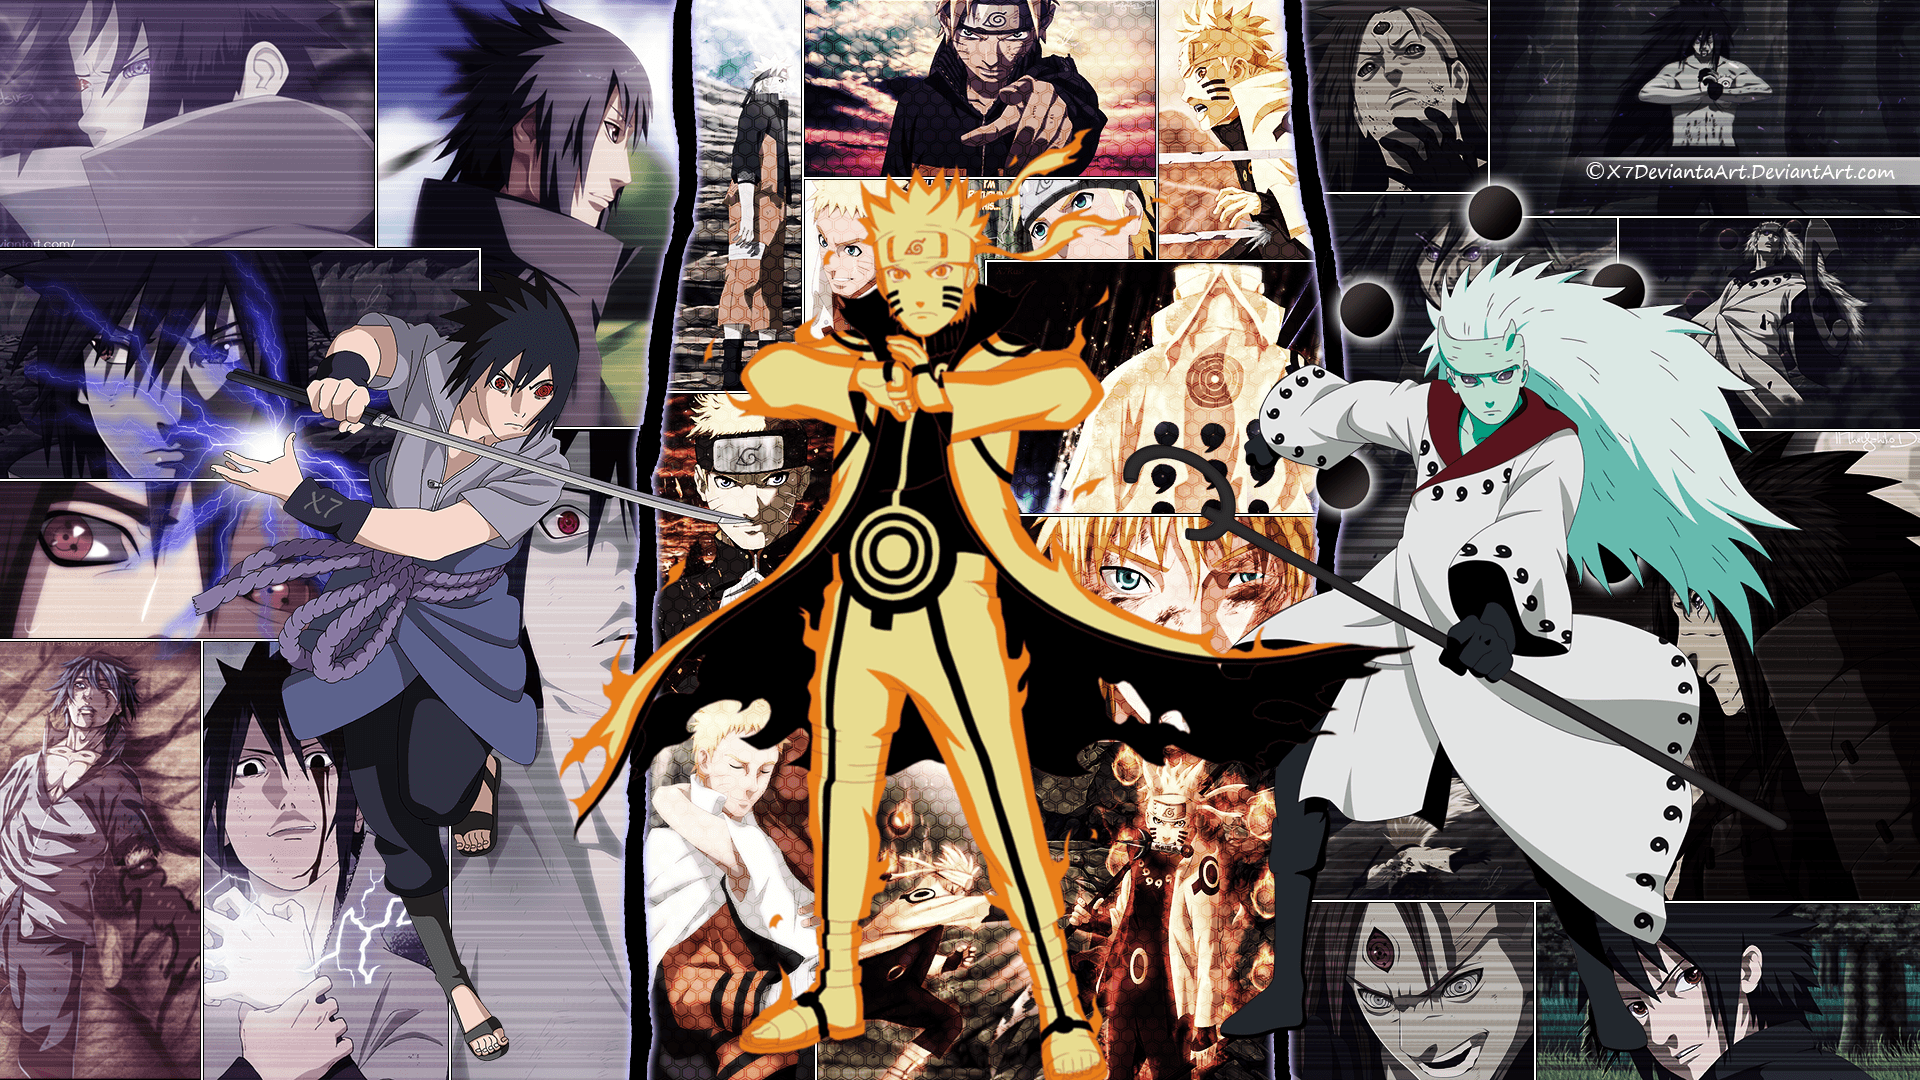 Sasuke Naruto And Madara Wallpaper ByX7deviantaArt